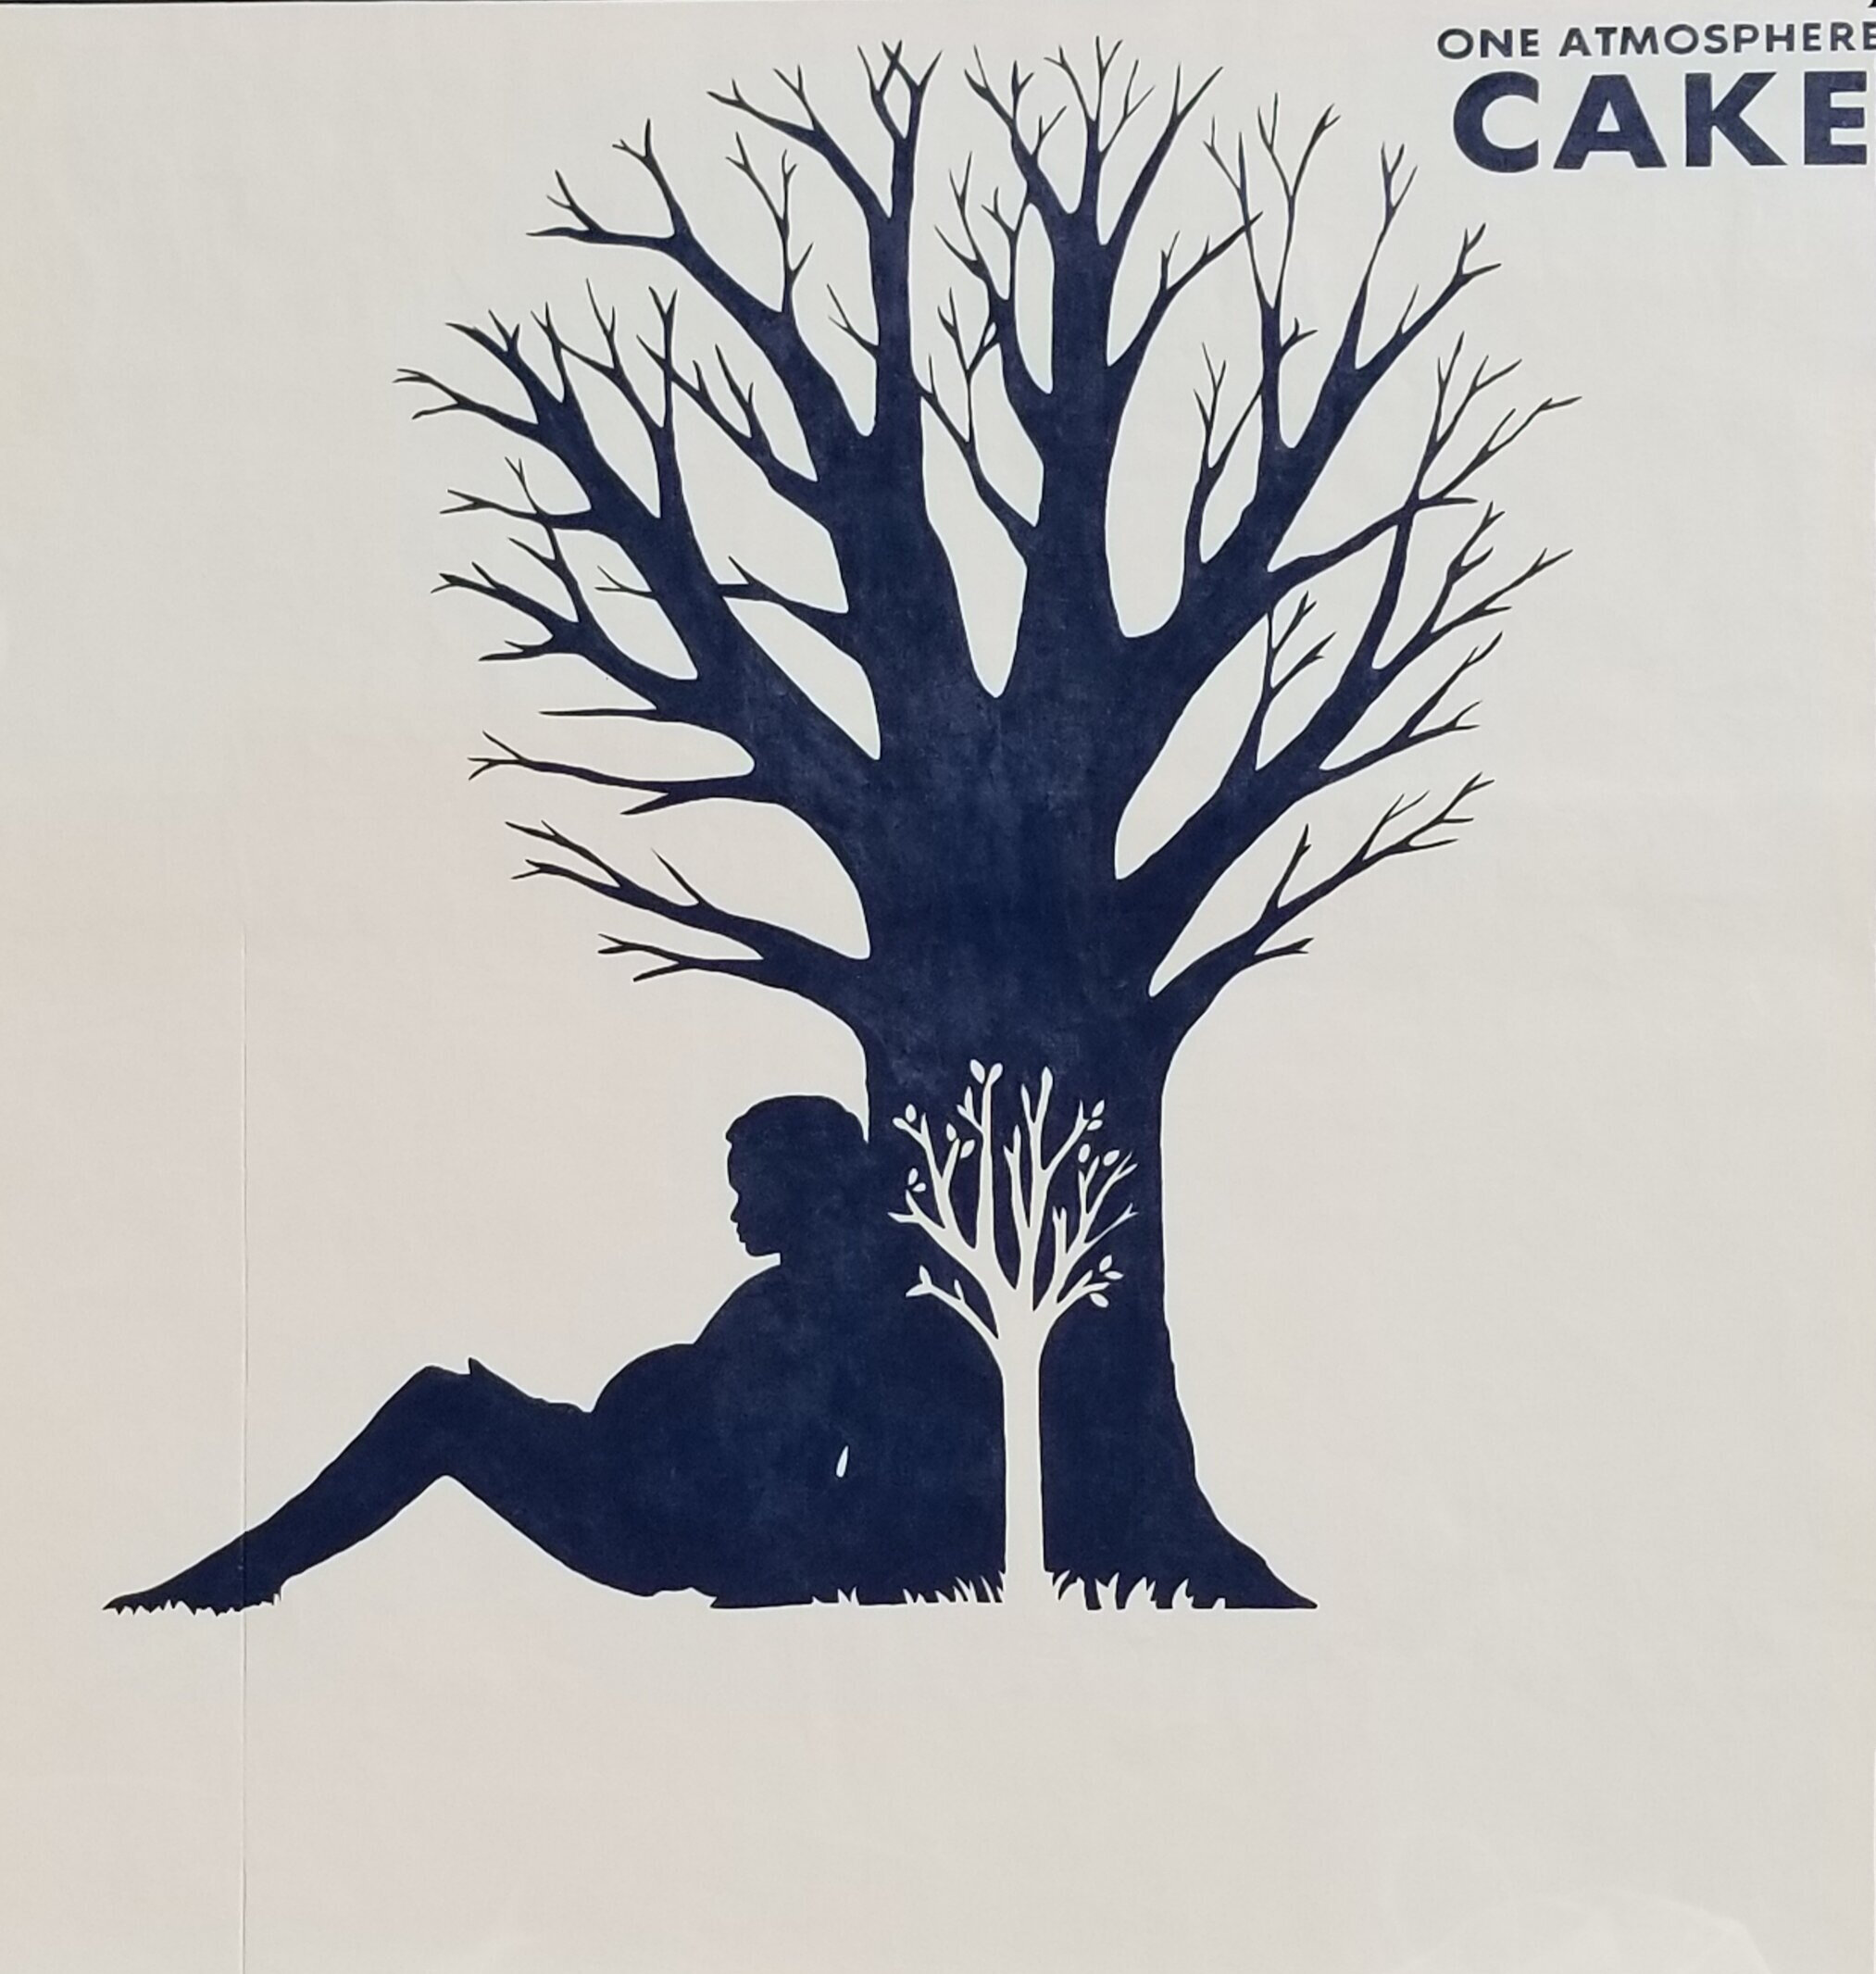 CAKE Mural